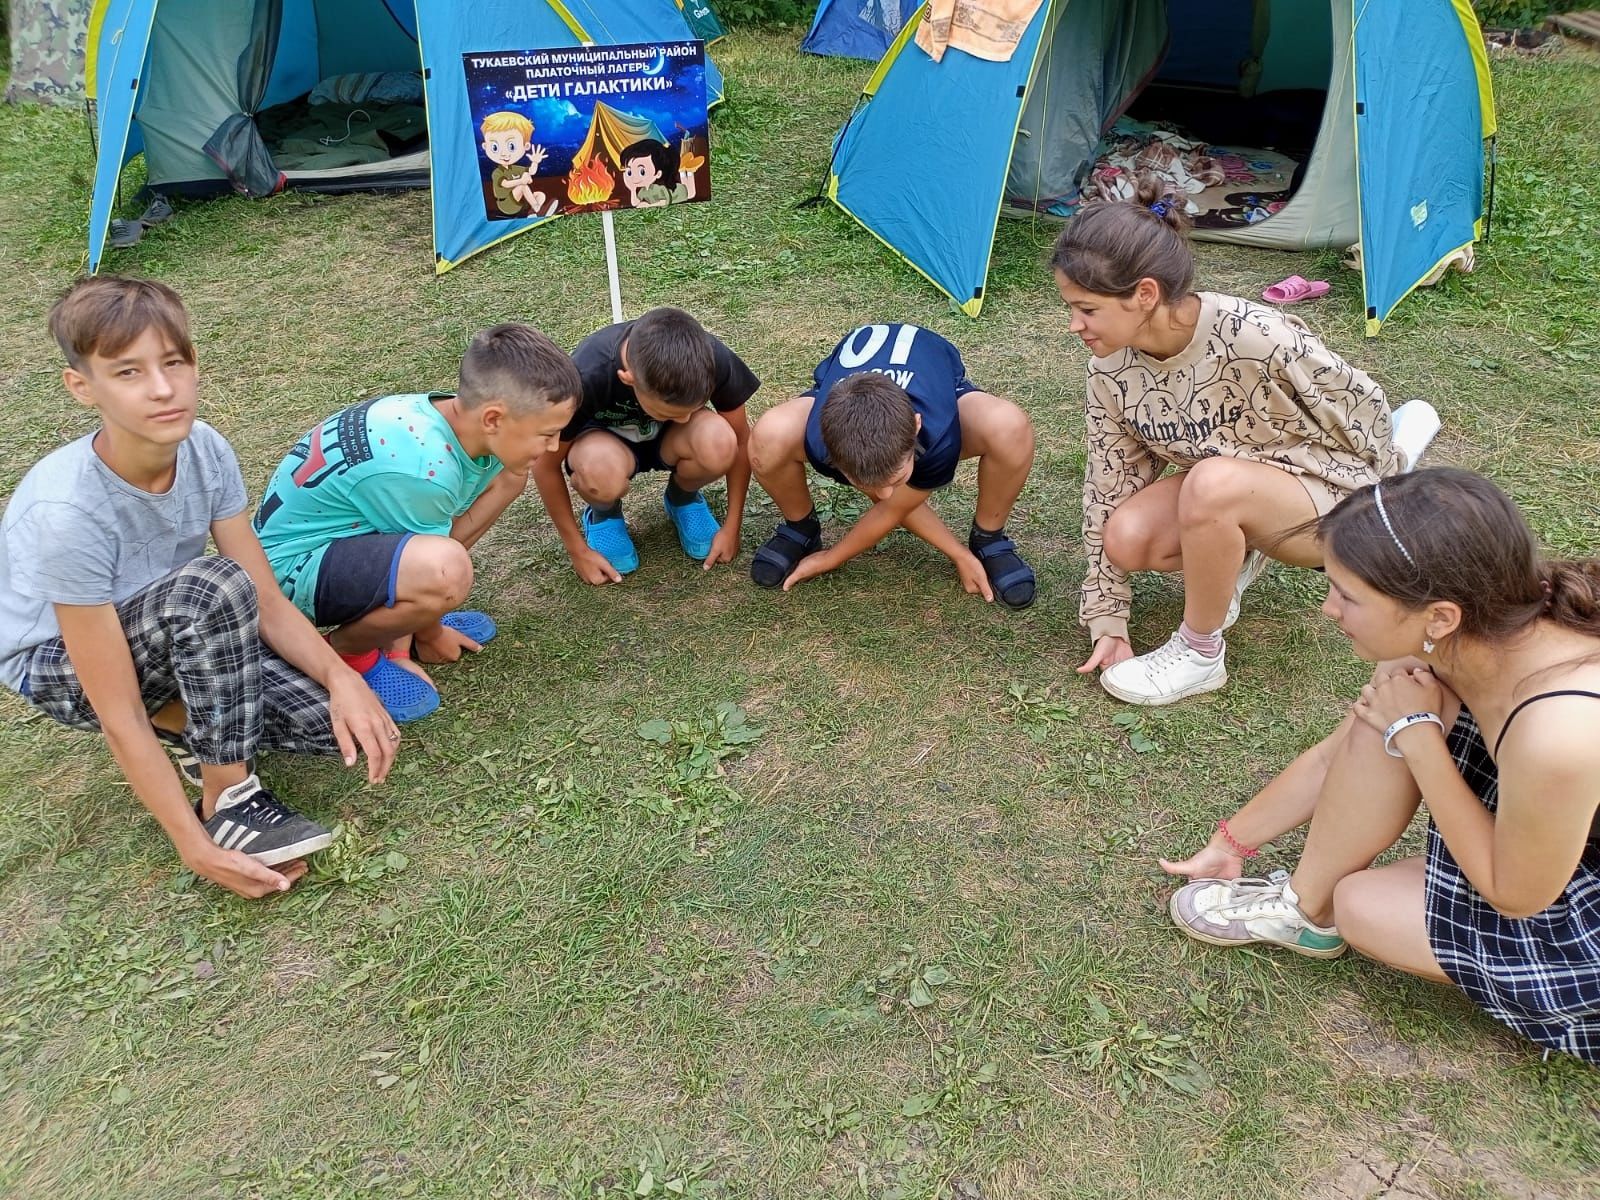 Фестиваль палаточных лагерей «Дети галактики».